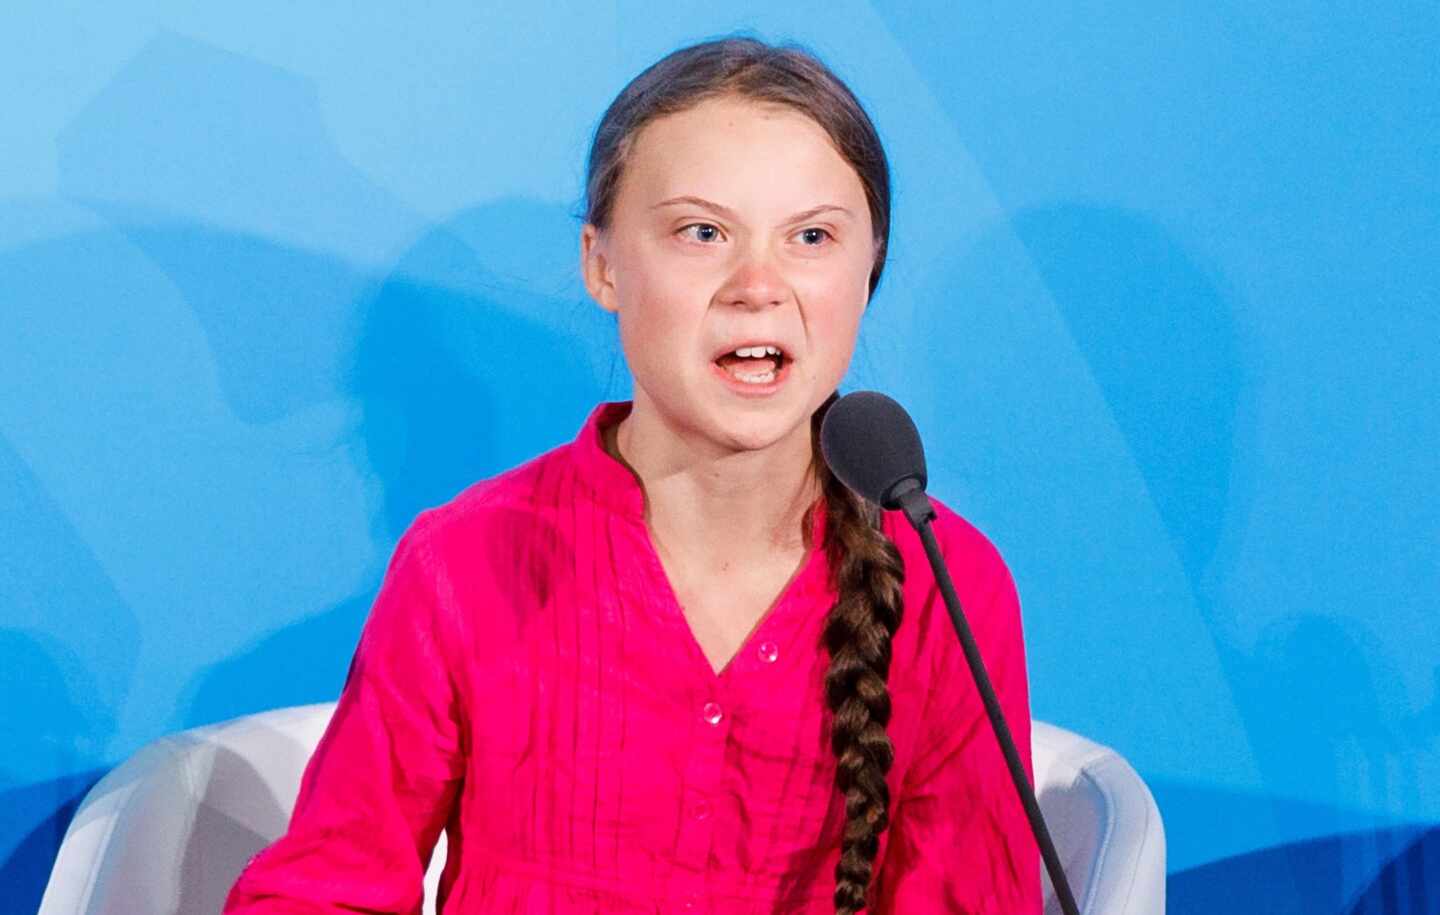 Greta Thunberg registra su propio nombre como marca comercial